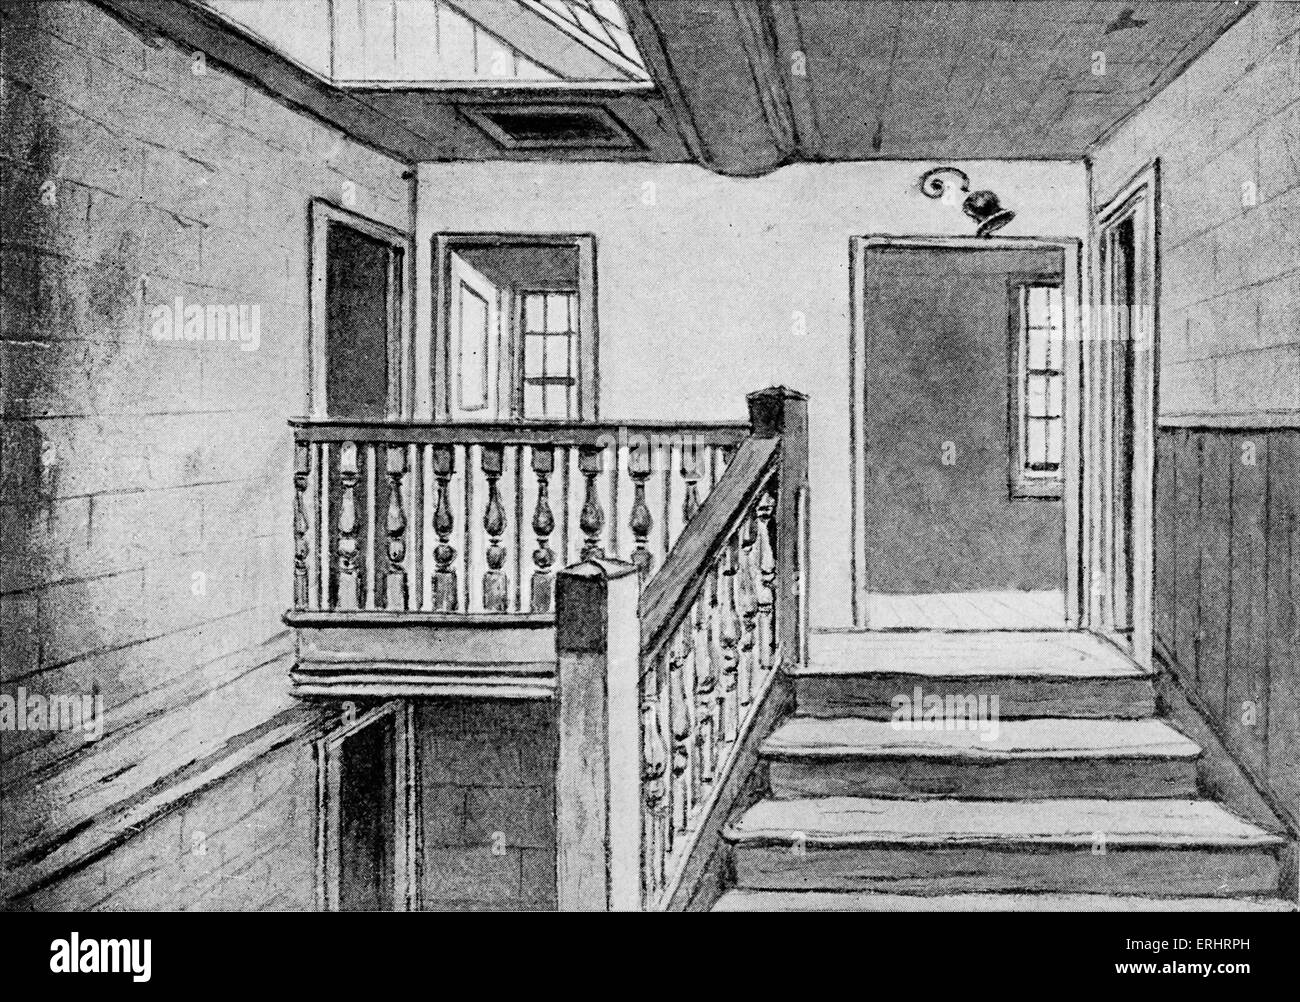 Samuel Johnson's house - l'escalier dans l'île Gough Square. SJ : Anglais essayiste, biographe, lexicographe et critique de l'anglais Banque D'Images